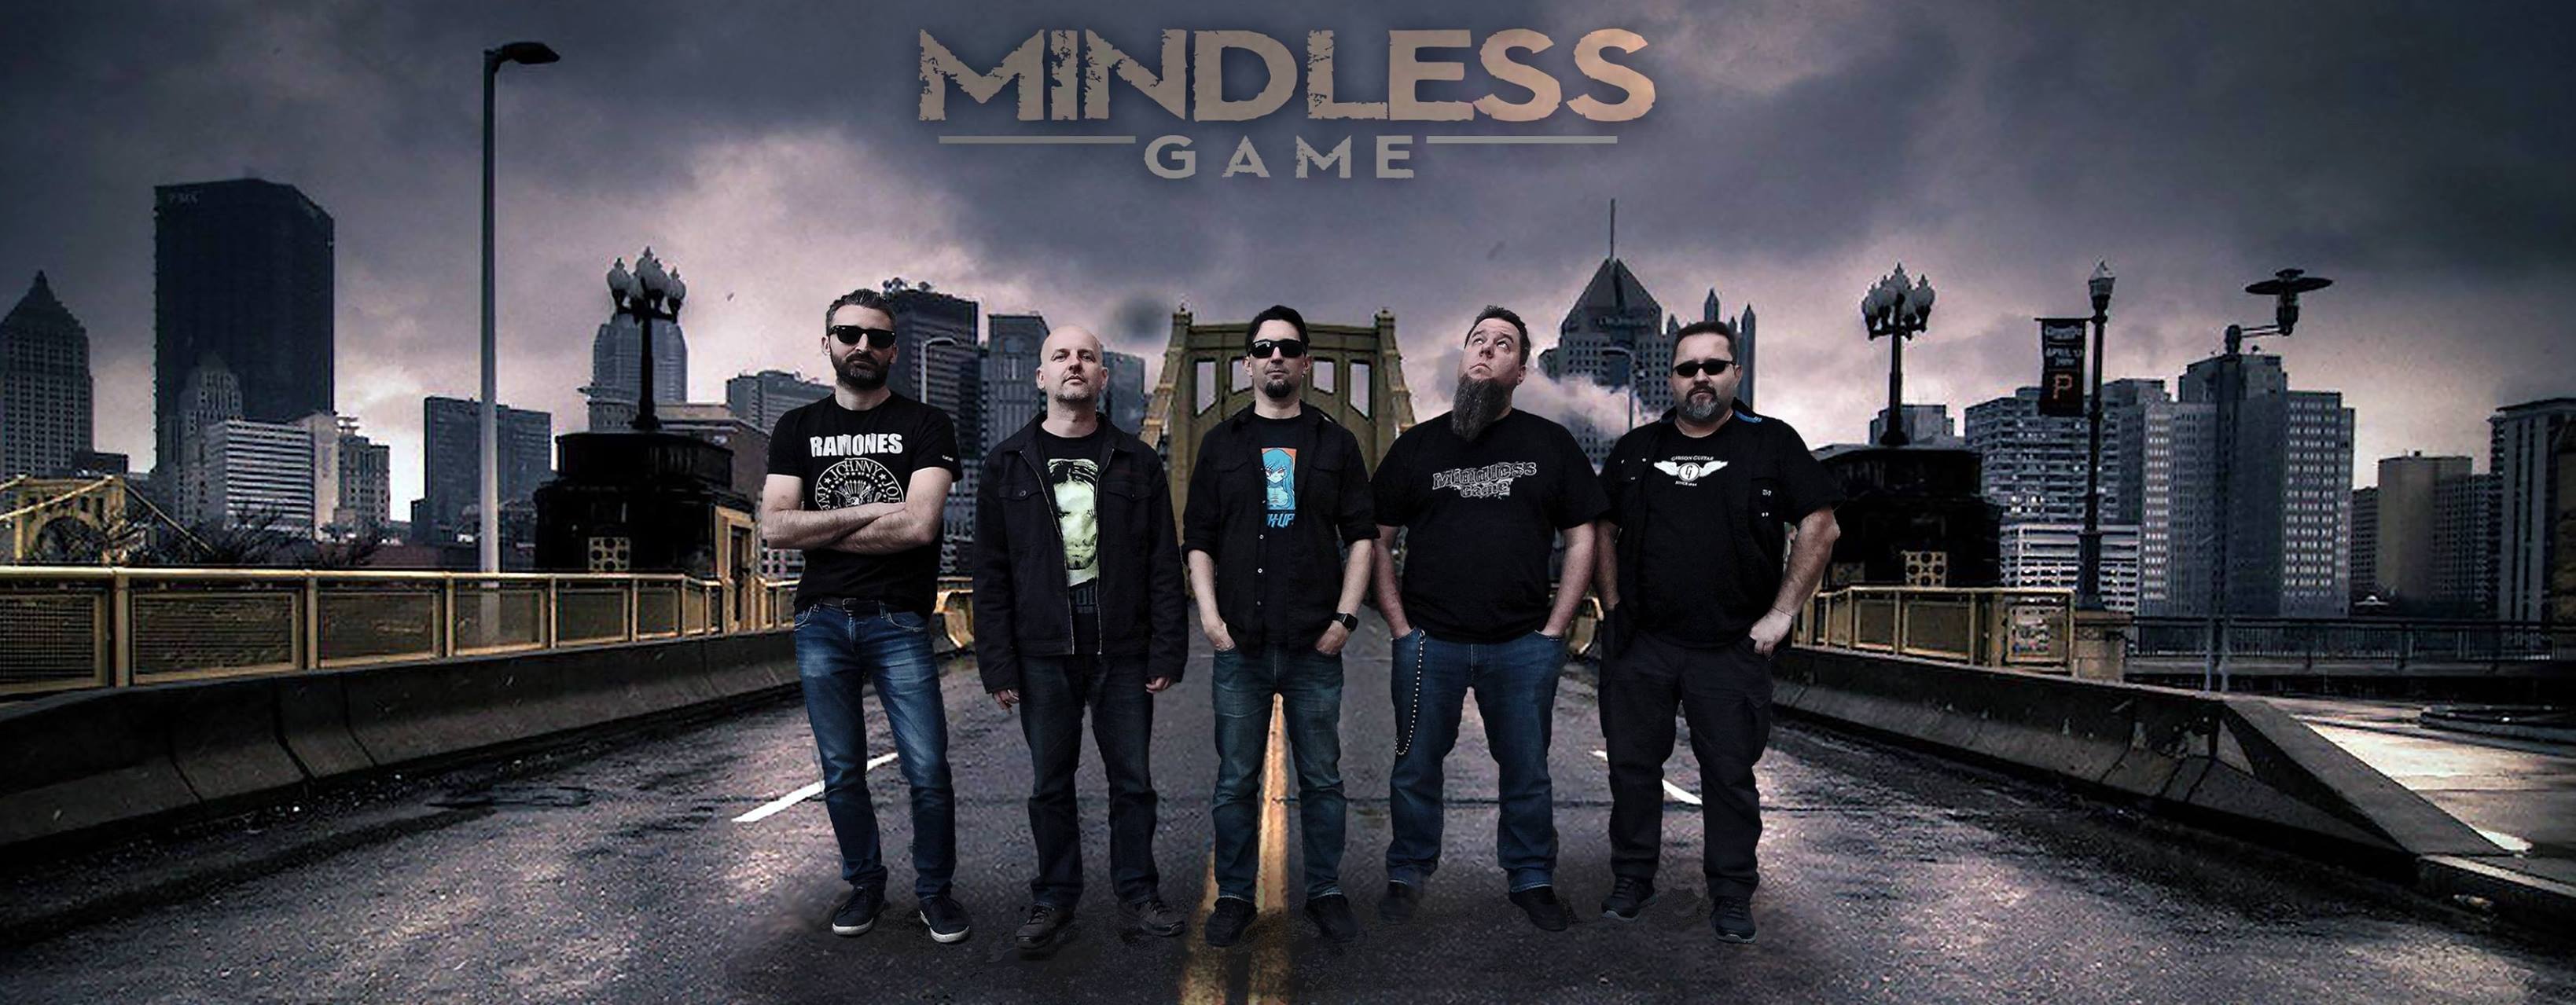 Mindless Game